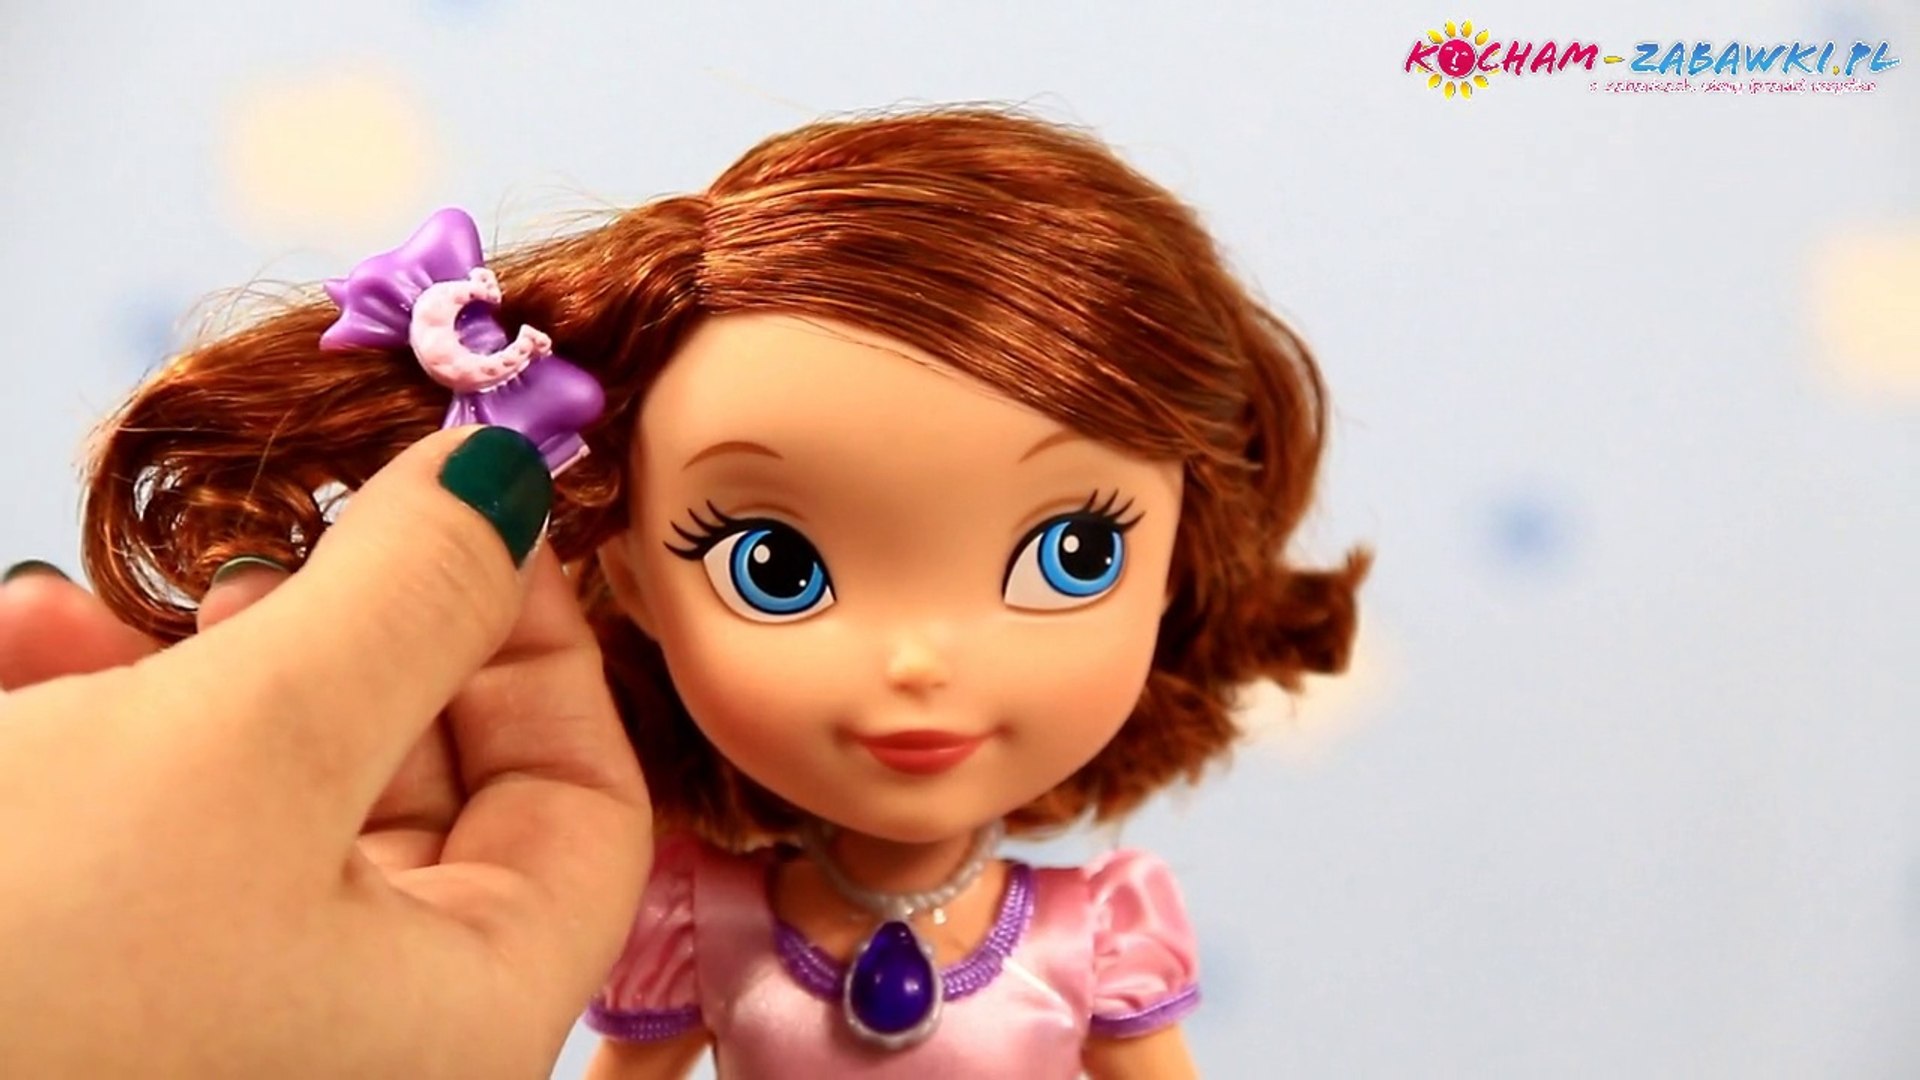 10-inch Sofia Doll / Lalka Zosia 26cm - Sofia The First / Jej Wysokość  Zosia - Disney Princess - Mattel - BDH66 - Recenzja - video Dailymotion